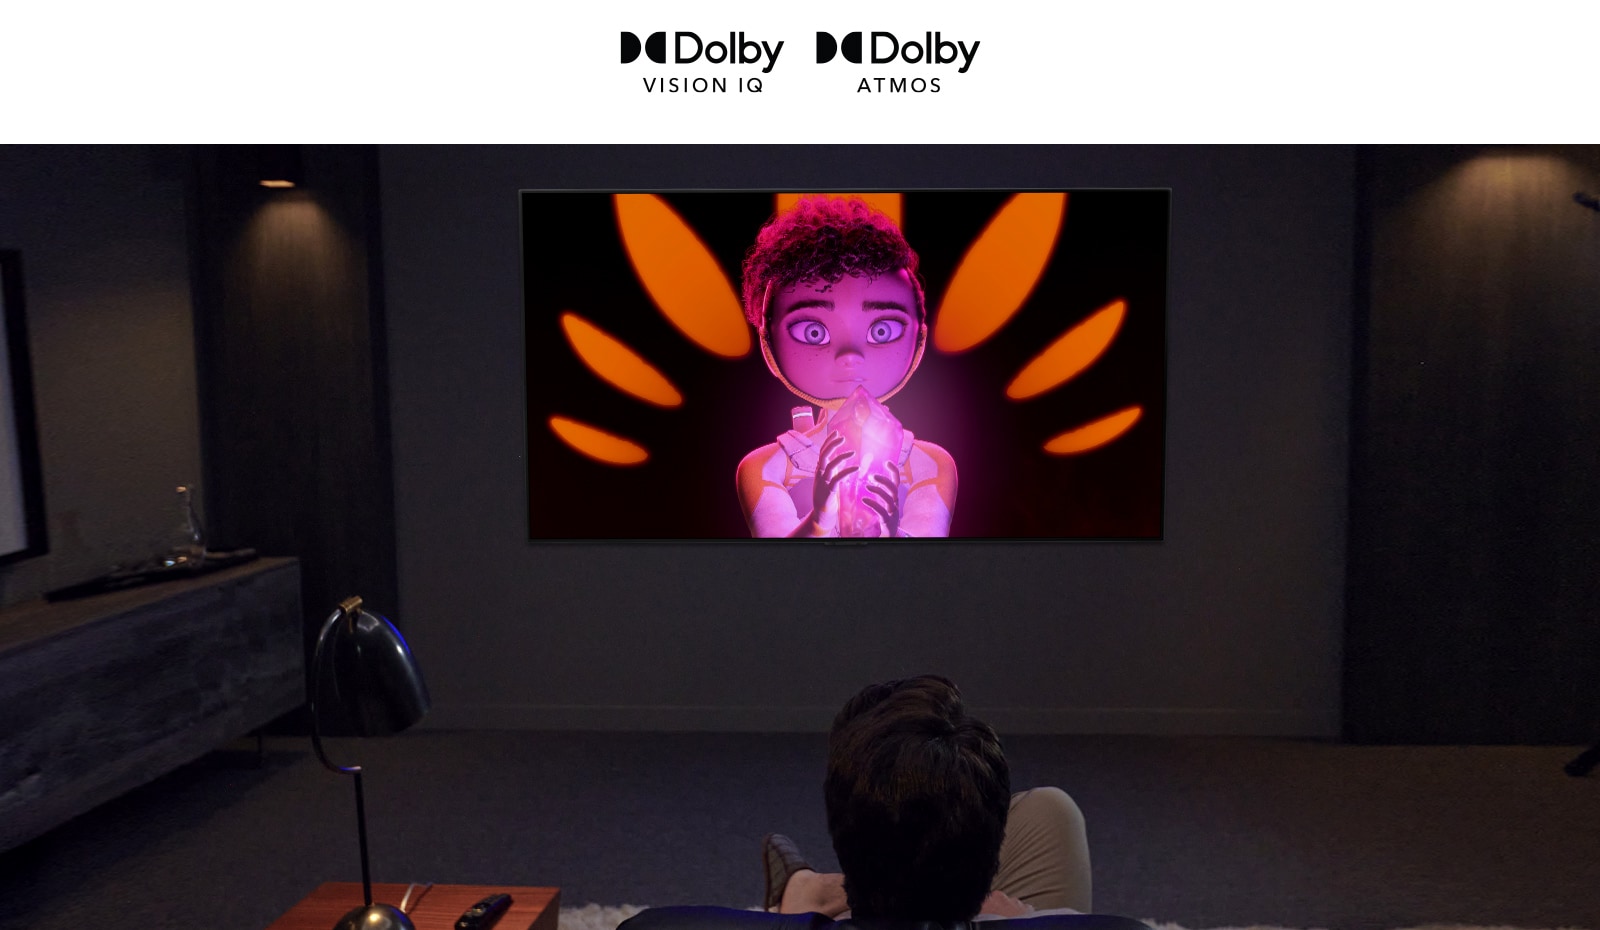 توجد شعارات Dolby Vision IQ و Atmos في خط أفقي.  أسفل الشعارات، يوجد أب وابن جالسان على الأريكة يشاهدان التلفاز يعرض   فتاة   تحمل معدنًا في منتصف خلفية سوداء وبرتقالية. 